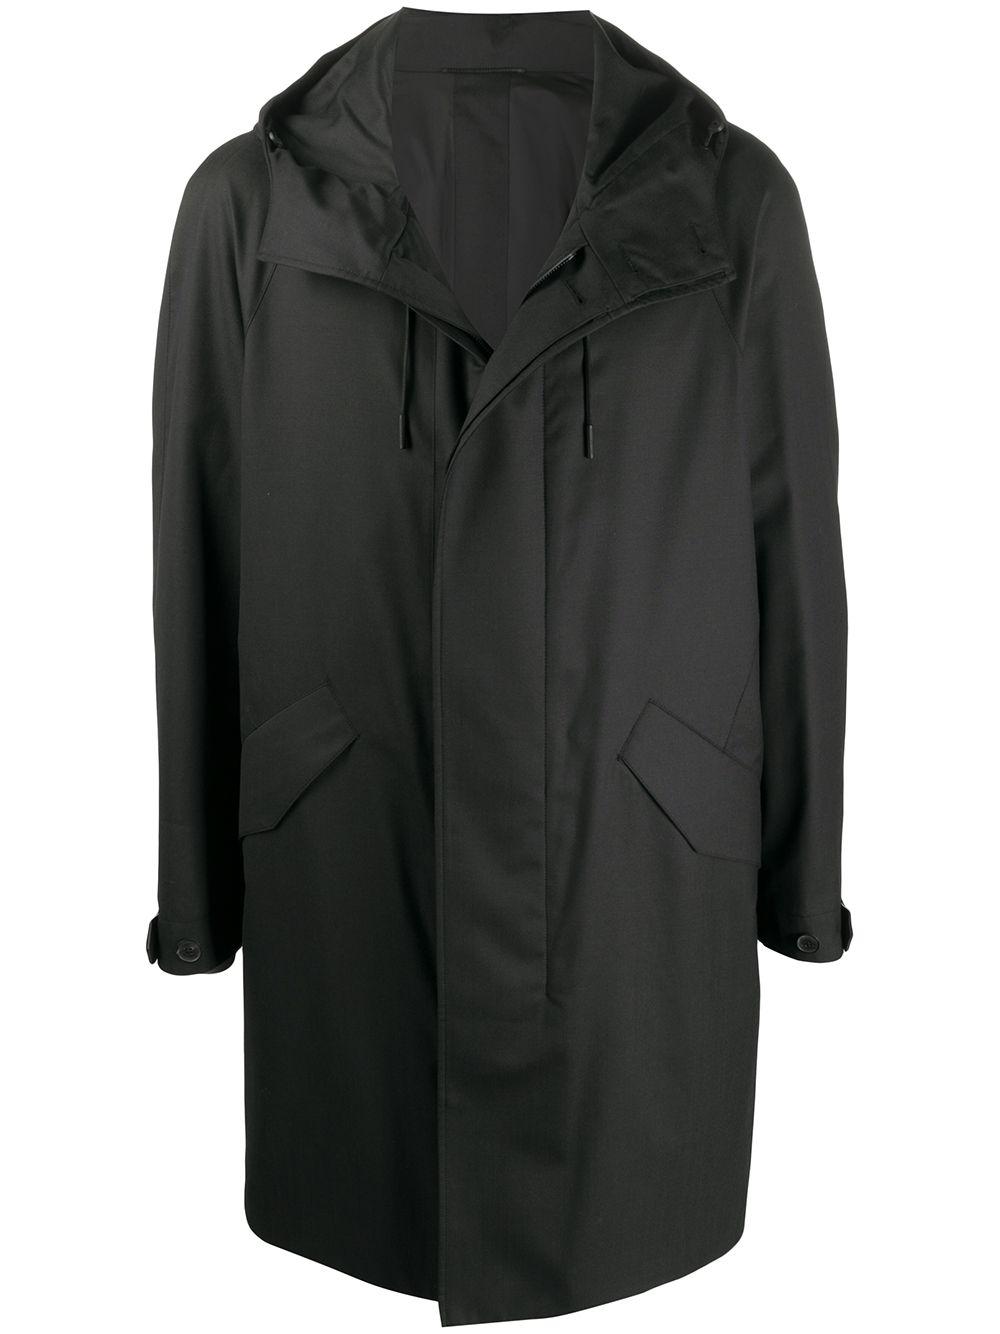 Ermenegildo Zegna Wool Hooded Coat in Grey (Gray) for Men - Lyst